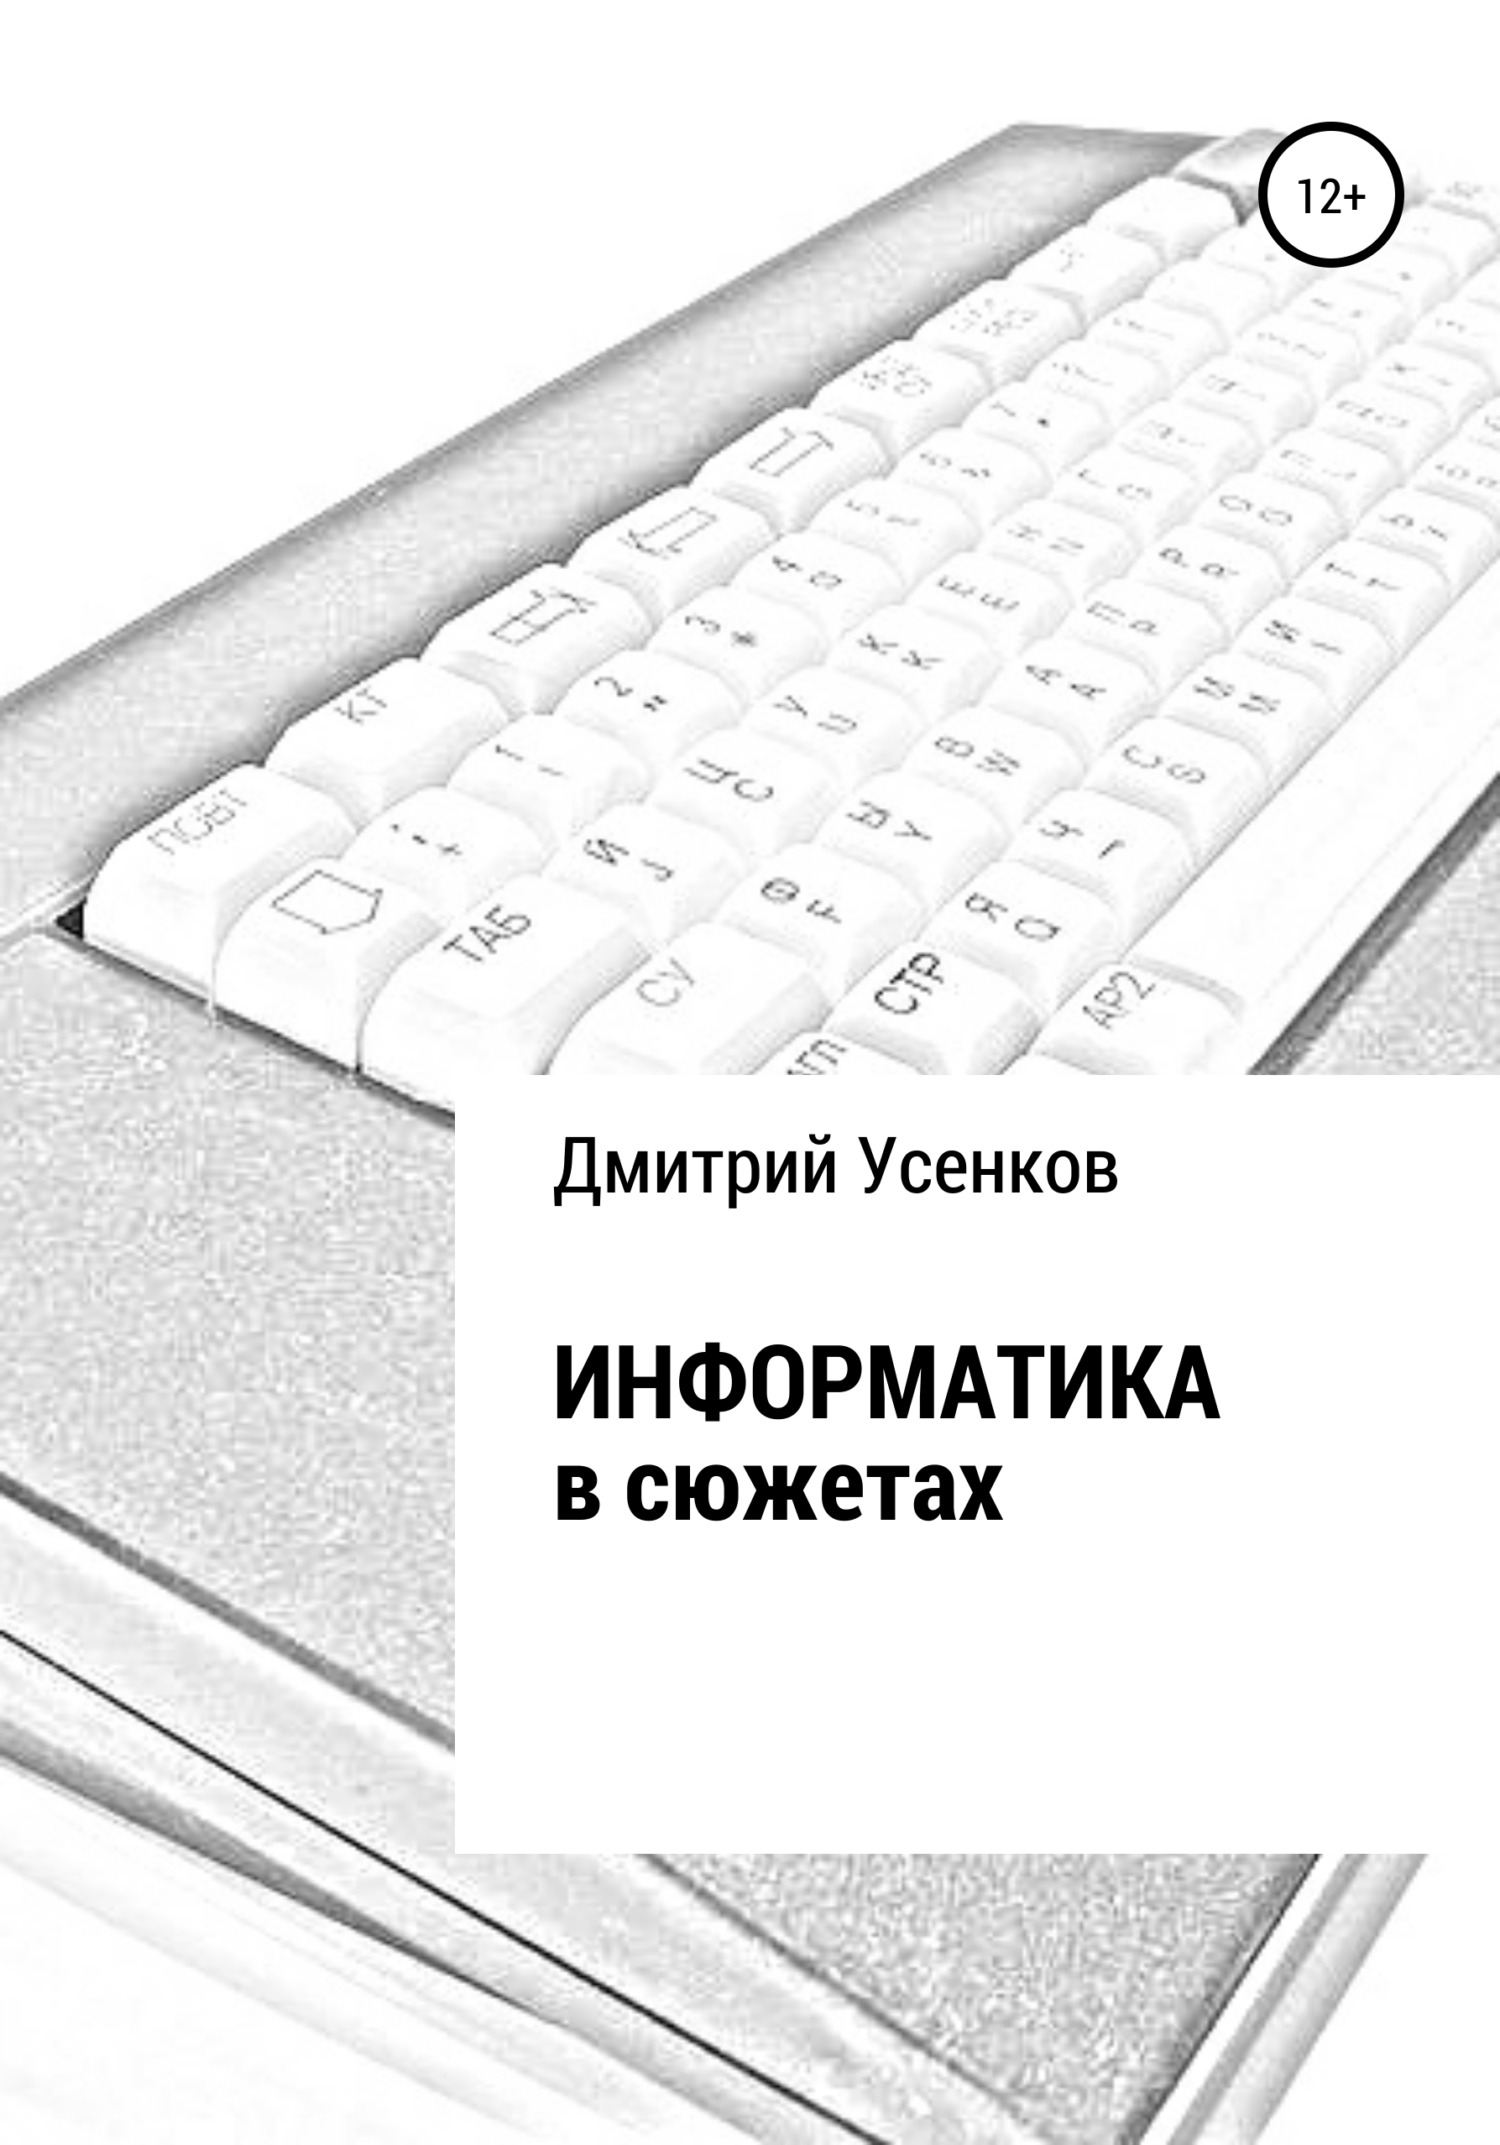 Книга Информатика в сюжетах из серии , созданная Дмитрий Усенков, может относится к жанру Компьютеры: прочее. Стоимость электронной книги Информатика в сюжетах с идентификатором 37405824 составляет 29.95 руб.